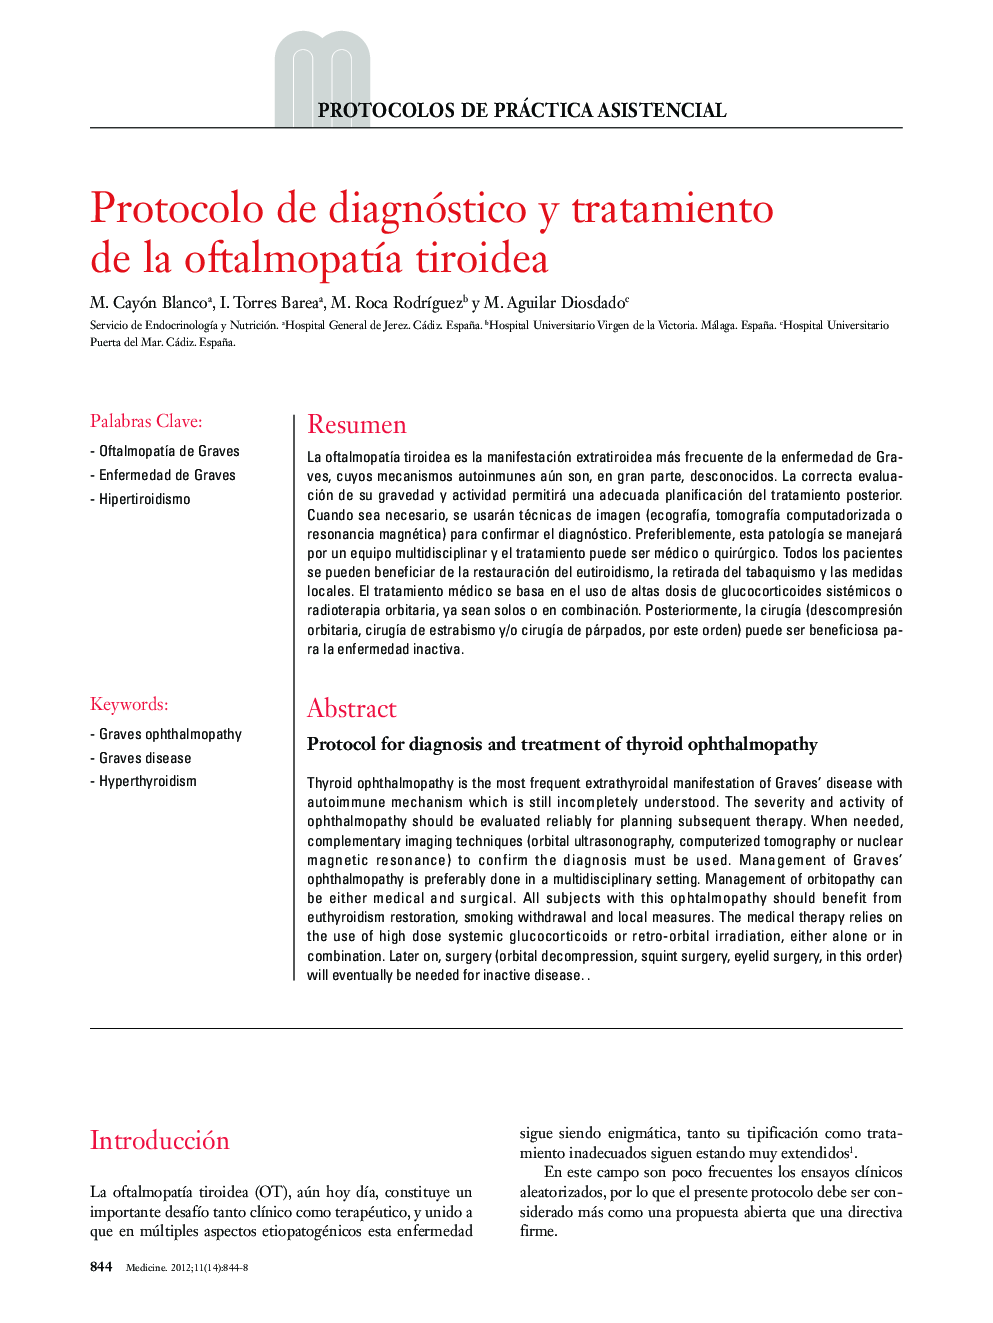 Protocolo de diagnóstico y tratamiento de la oftalmopatía tiroidea